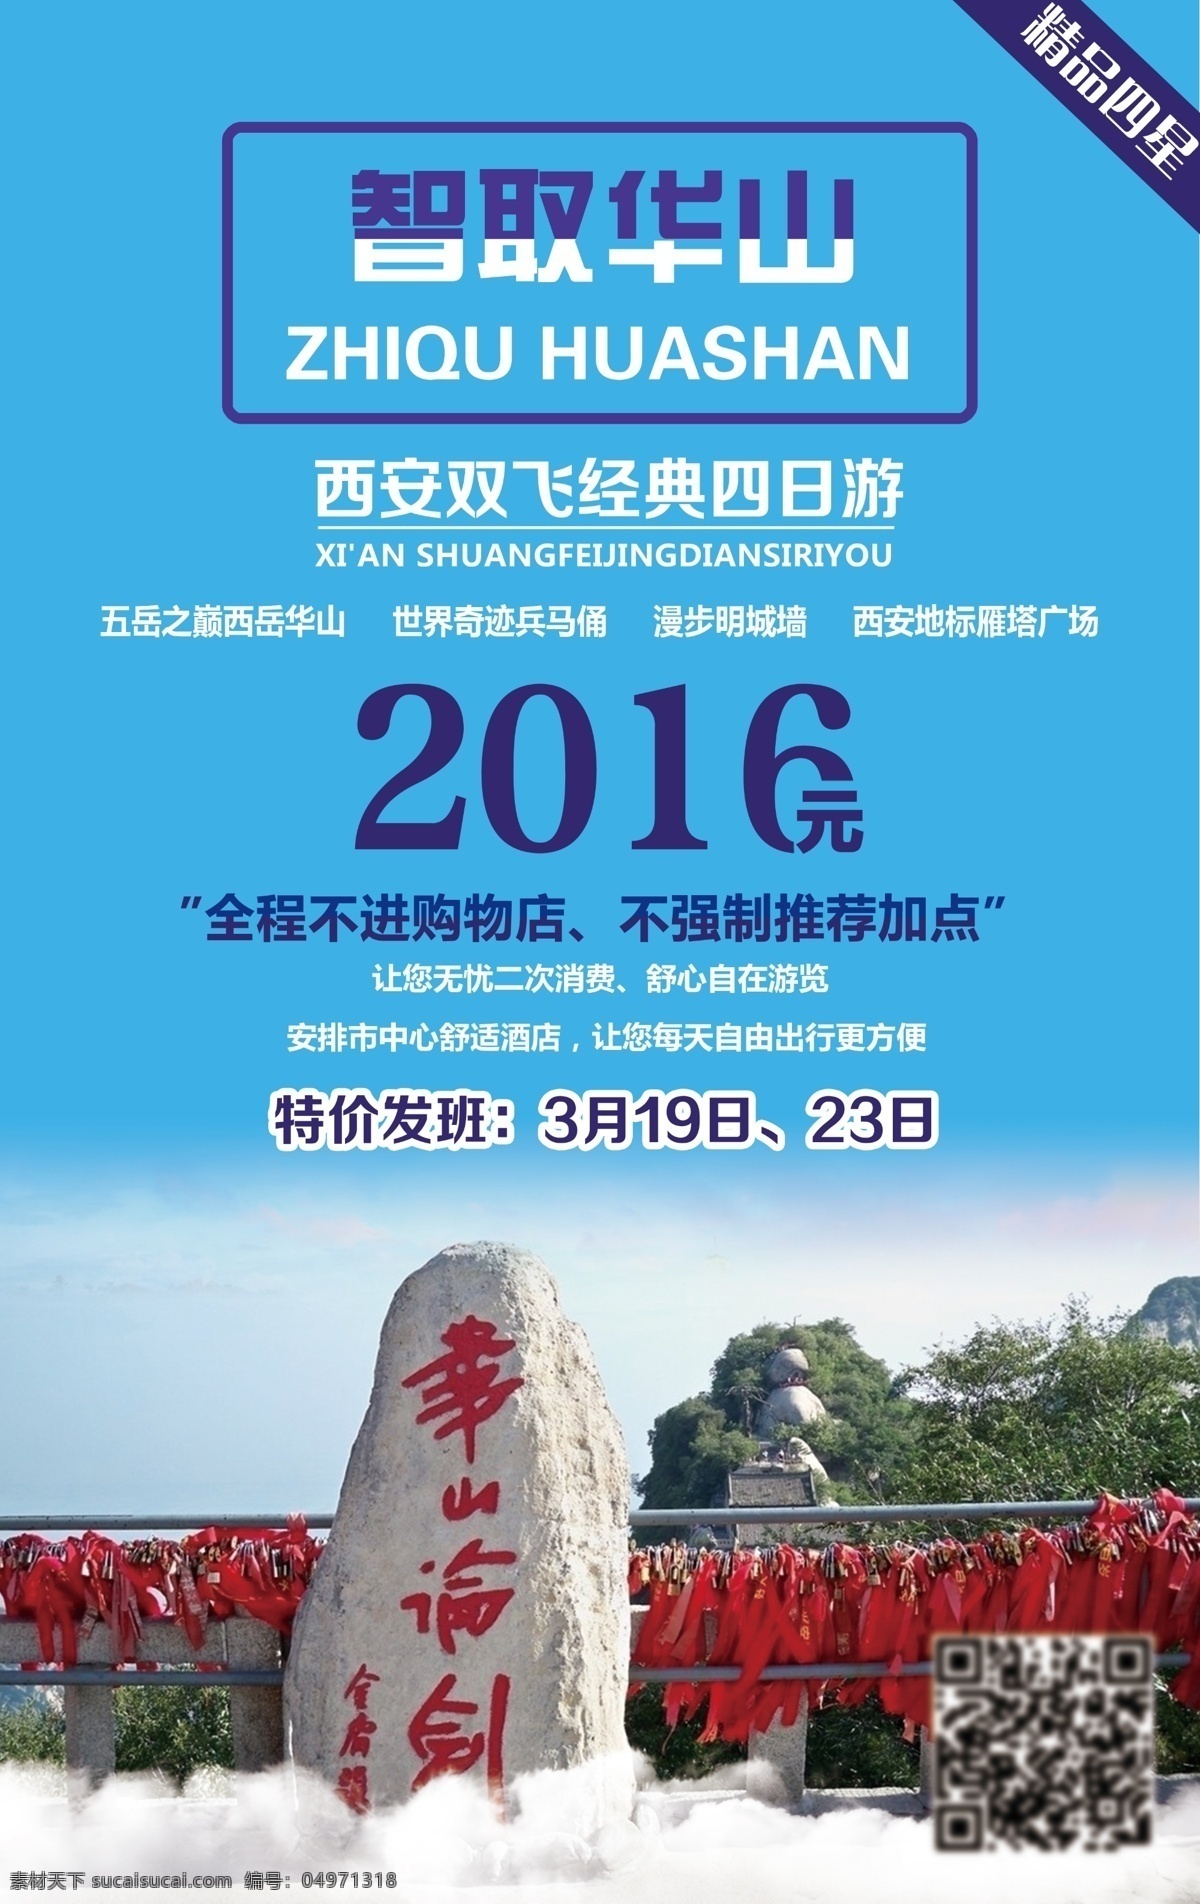 智取华山 旅游 海报 旅游宣传海报 微信广告 广告图